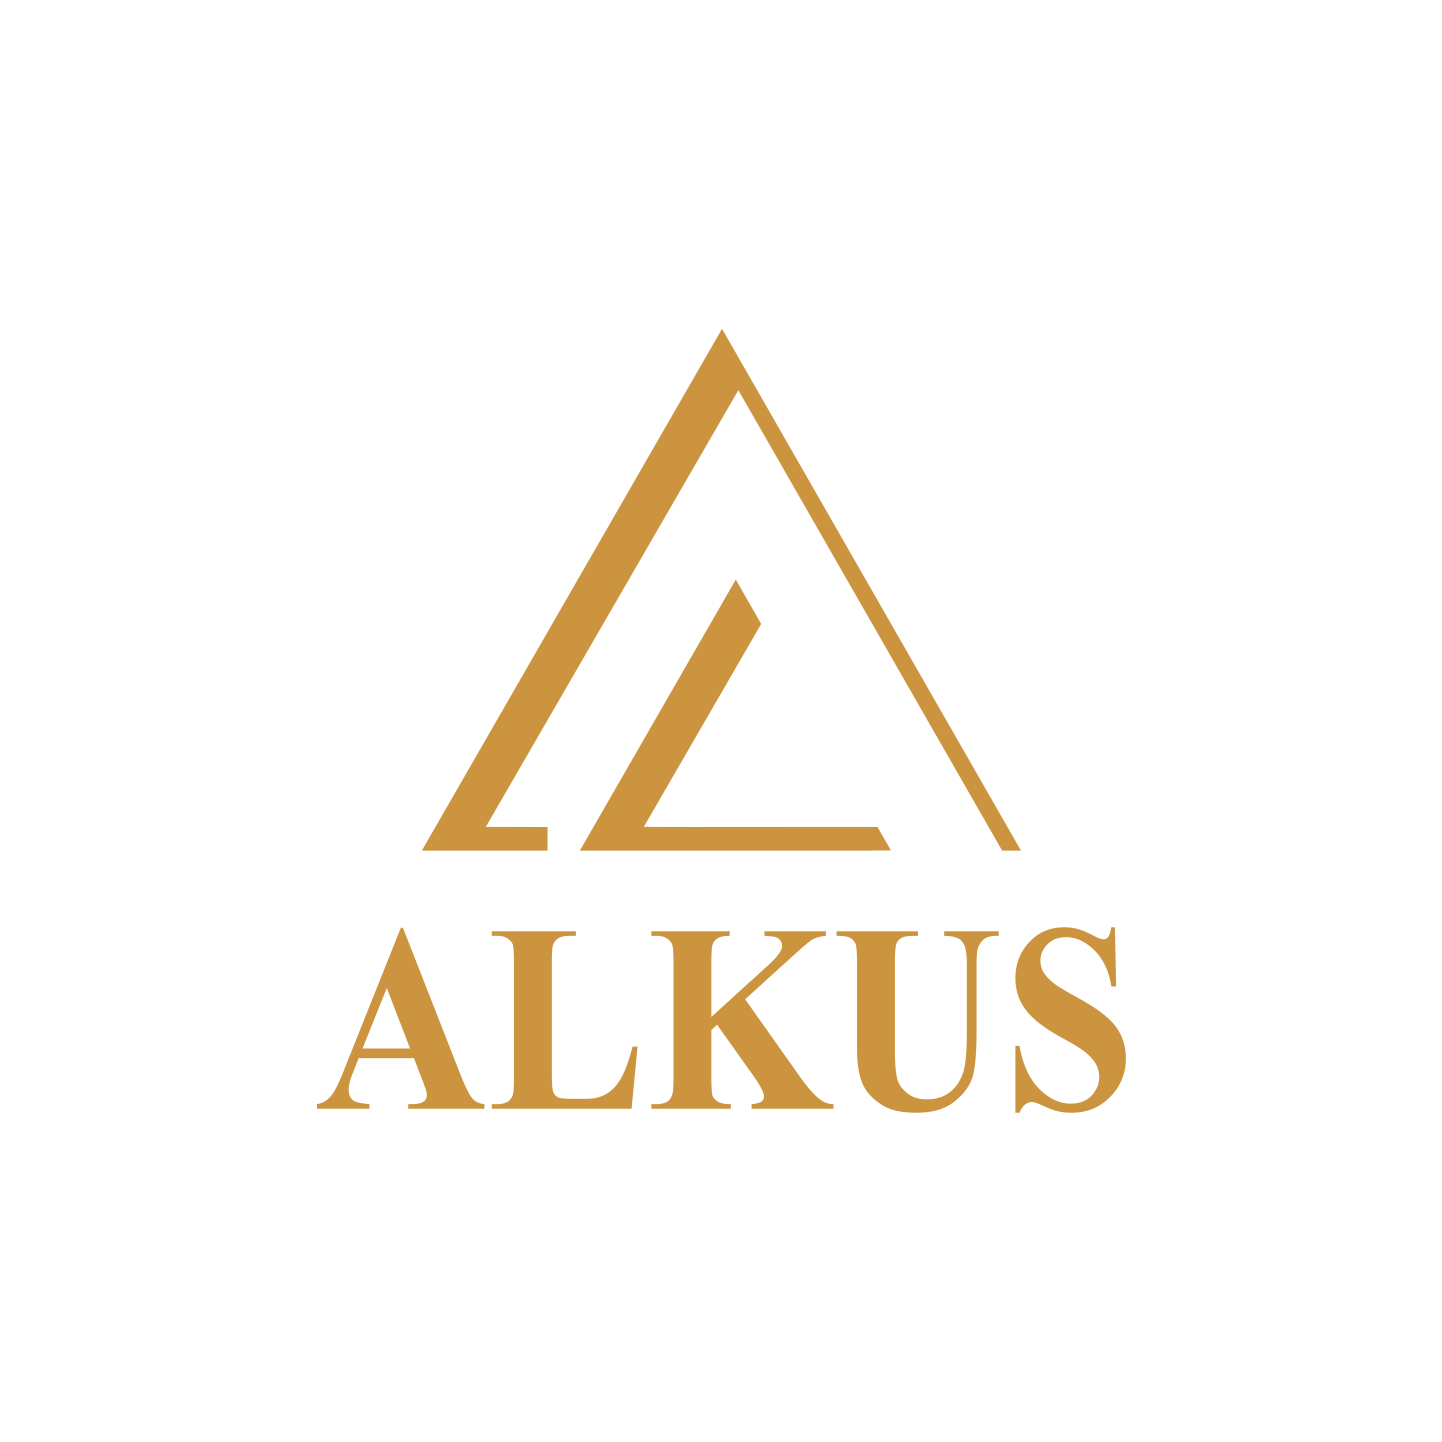 alkus-logo.png